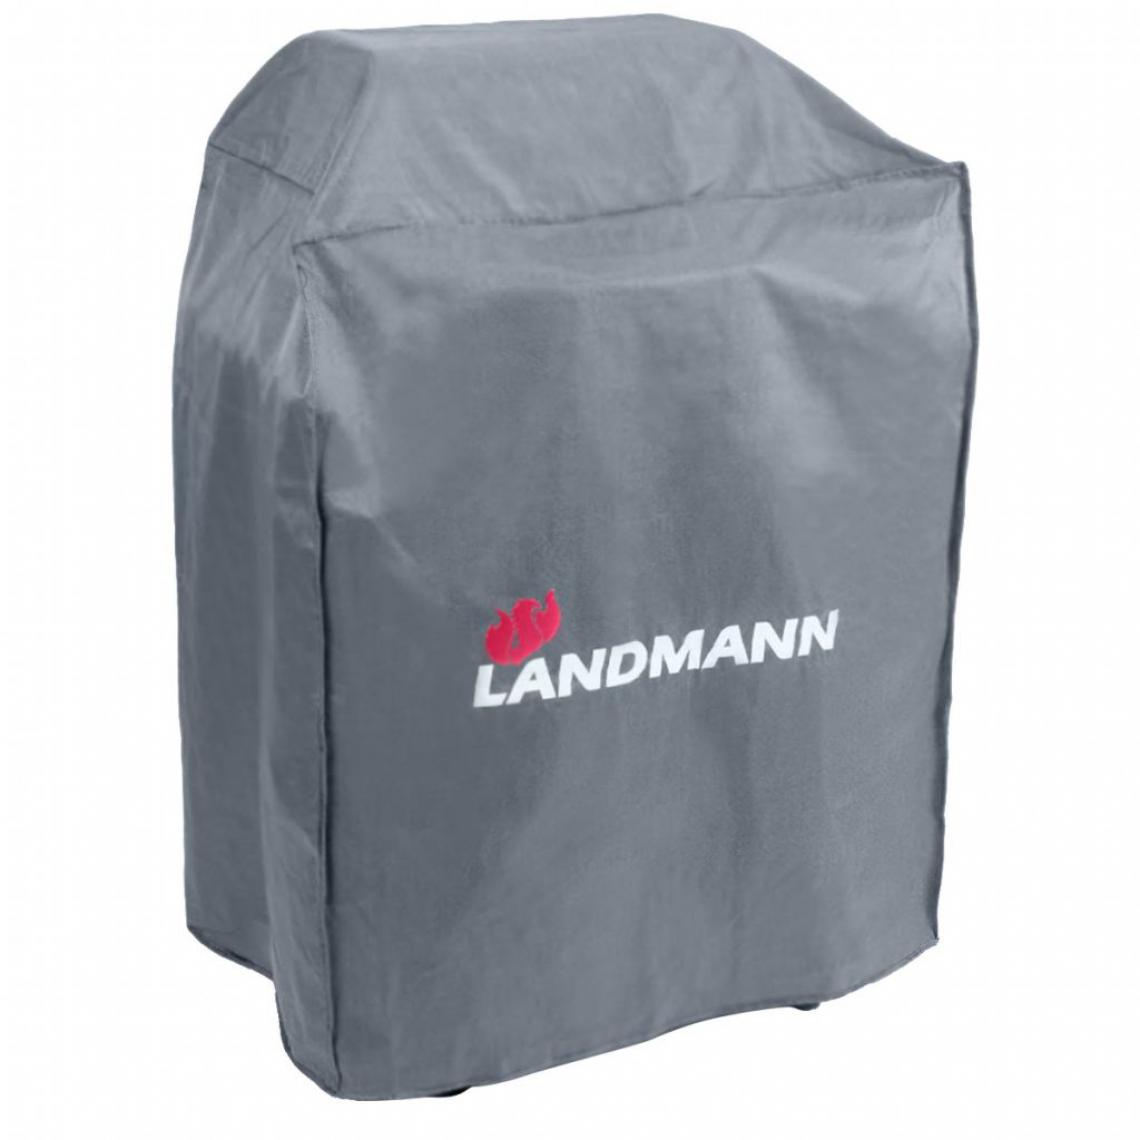 Landmann - Landmann Housse de barbecue Premium M 80 x 60 x 120 cm - Accessoires barbecue